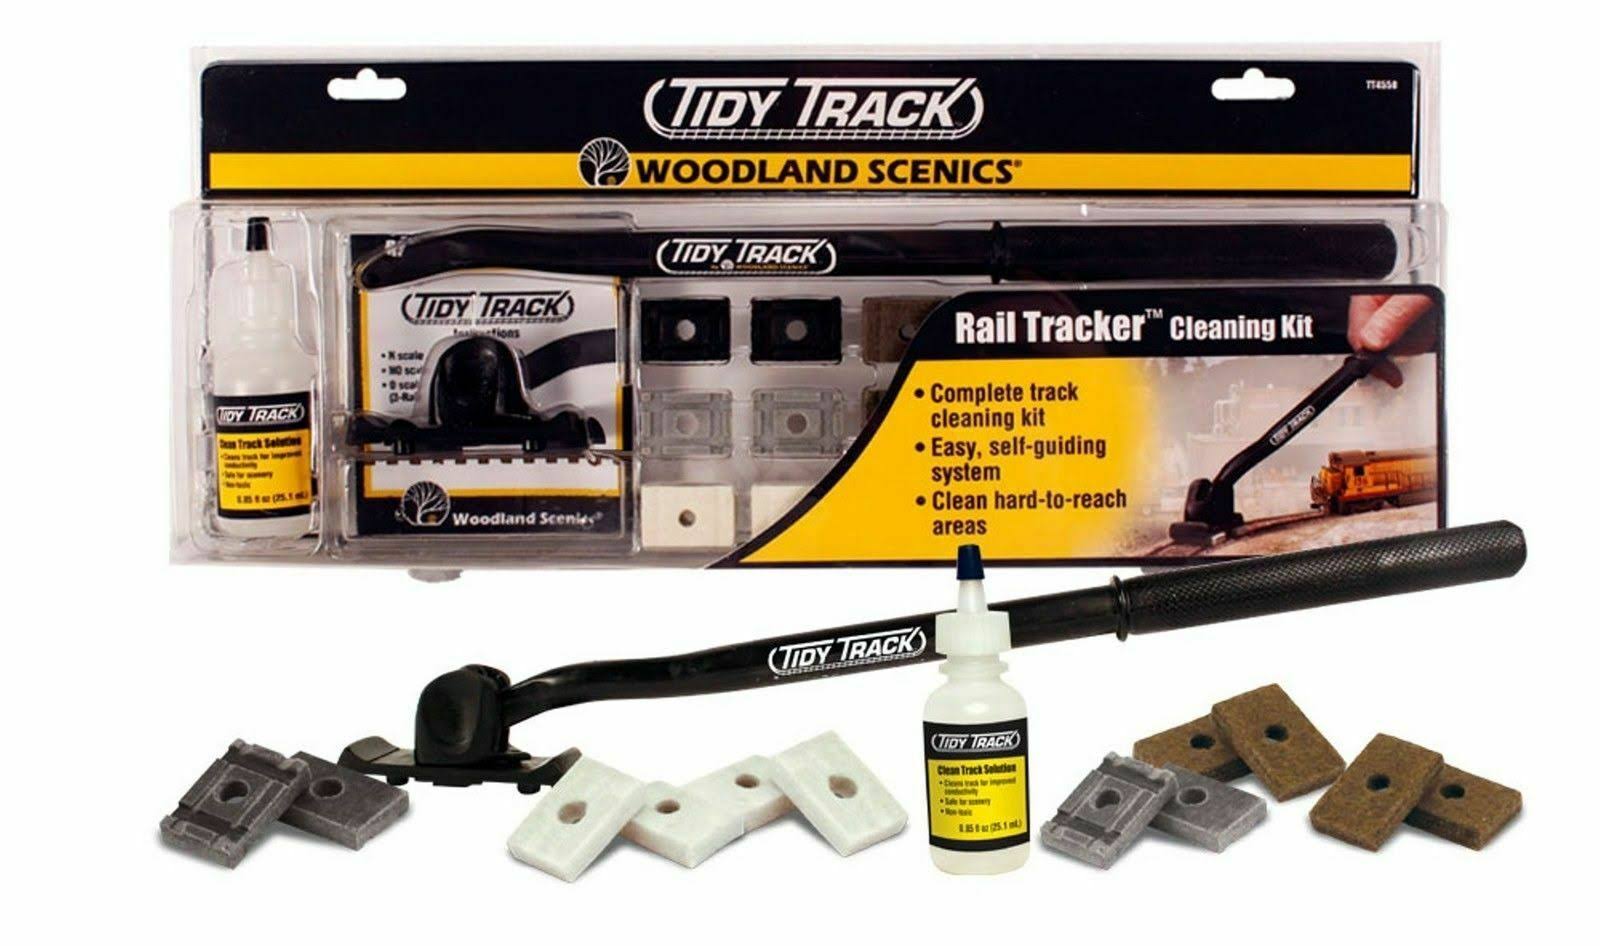 Woodland Scenics TT4550 Tidy Track Rail Tracker Cleaning Kit